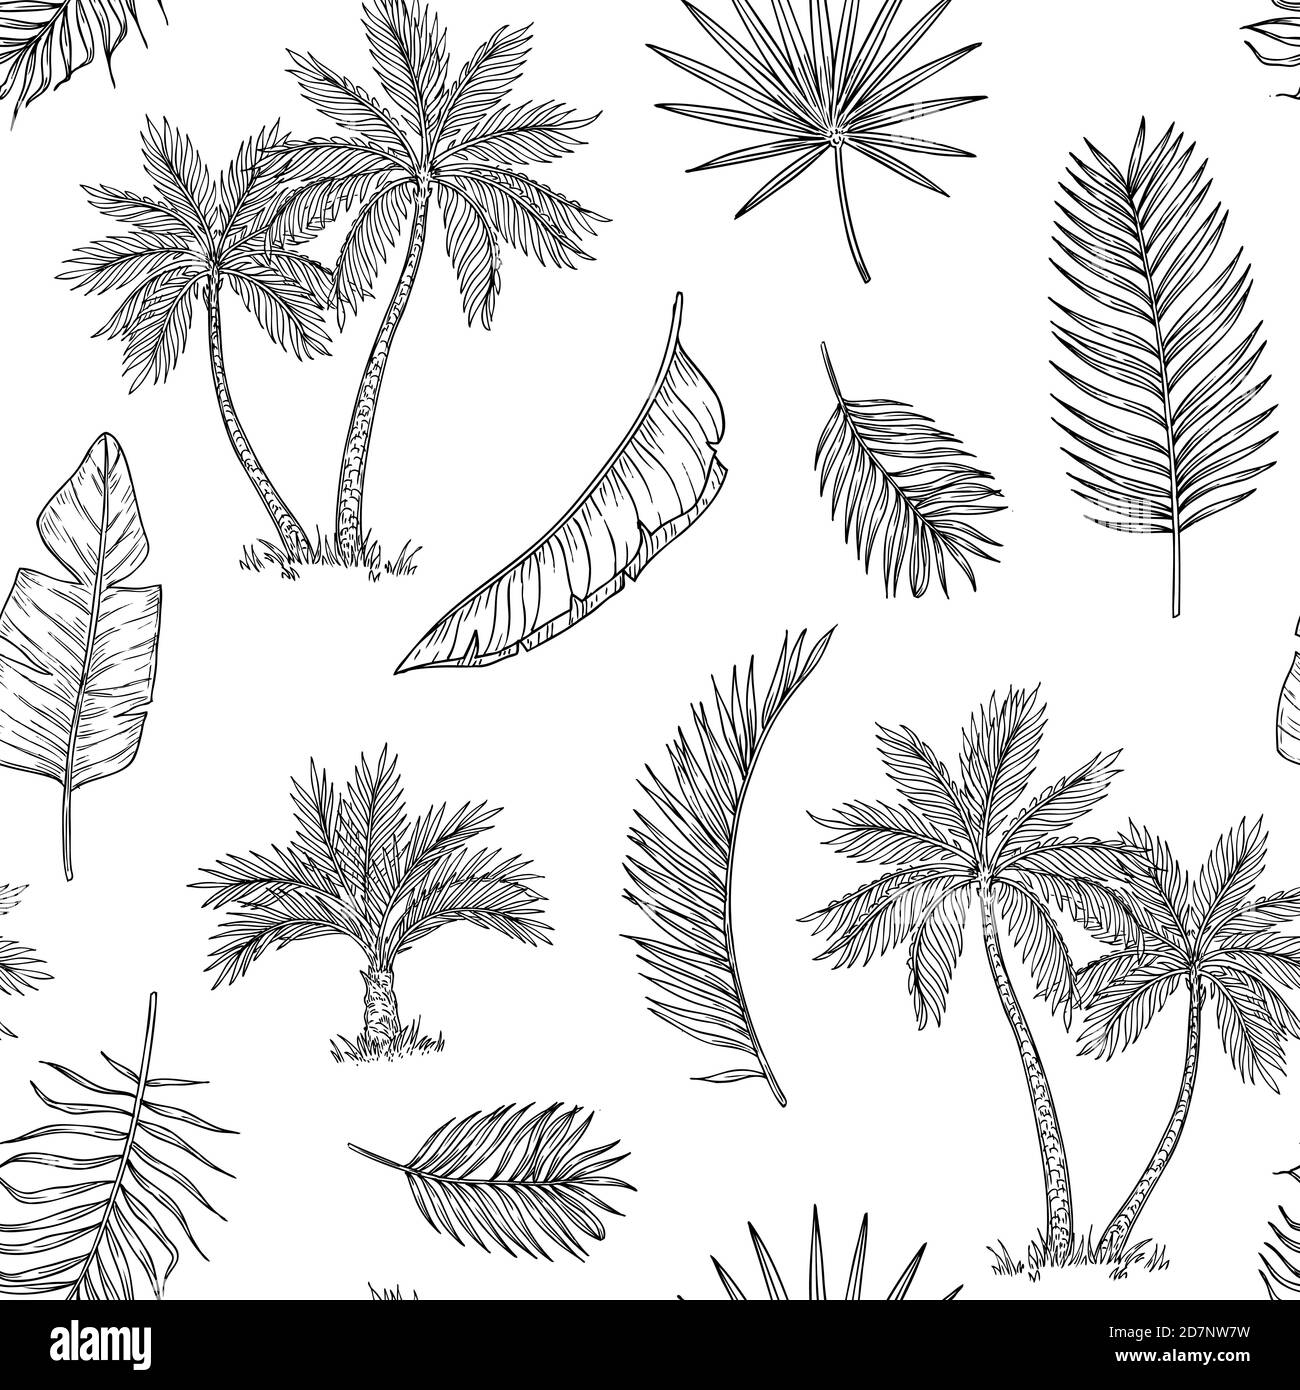 Palm Tree nahtloser Hintergrund. Tropische Kokospalme, exotische Insel. Vintage Hand Zeichnung abstrakt floral Sommer Vektor drucken Muster. Muster nahtlose Baum Palme Blatt Hintergrund Illustration Grafik Stock Vektor